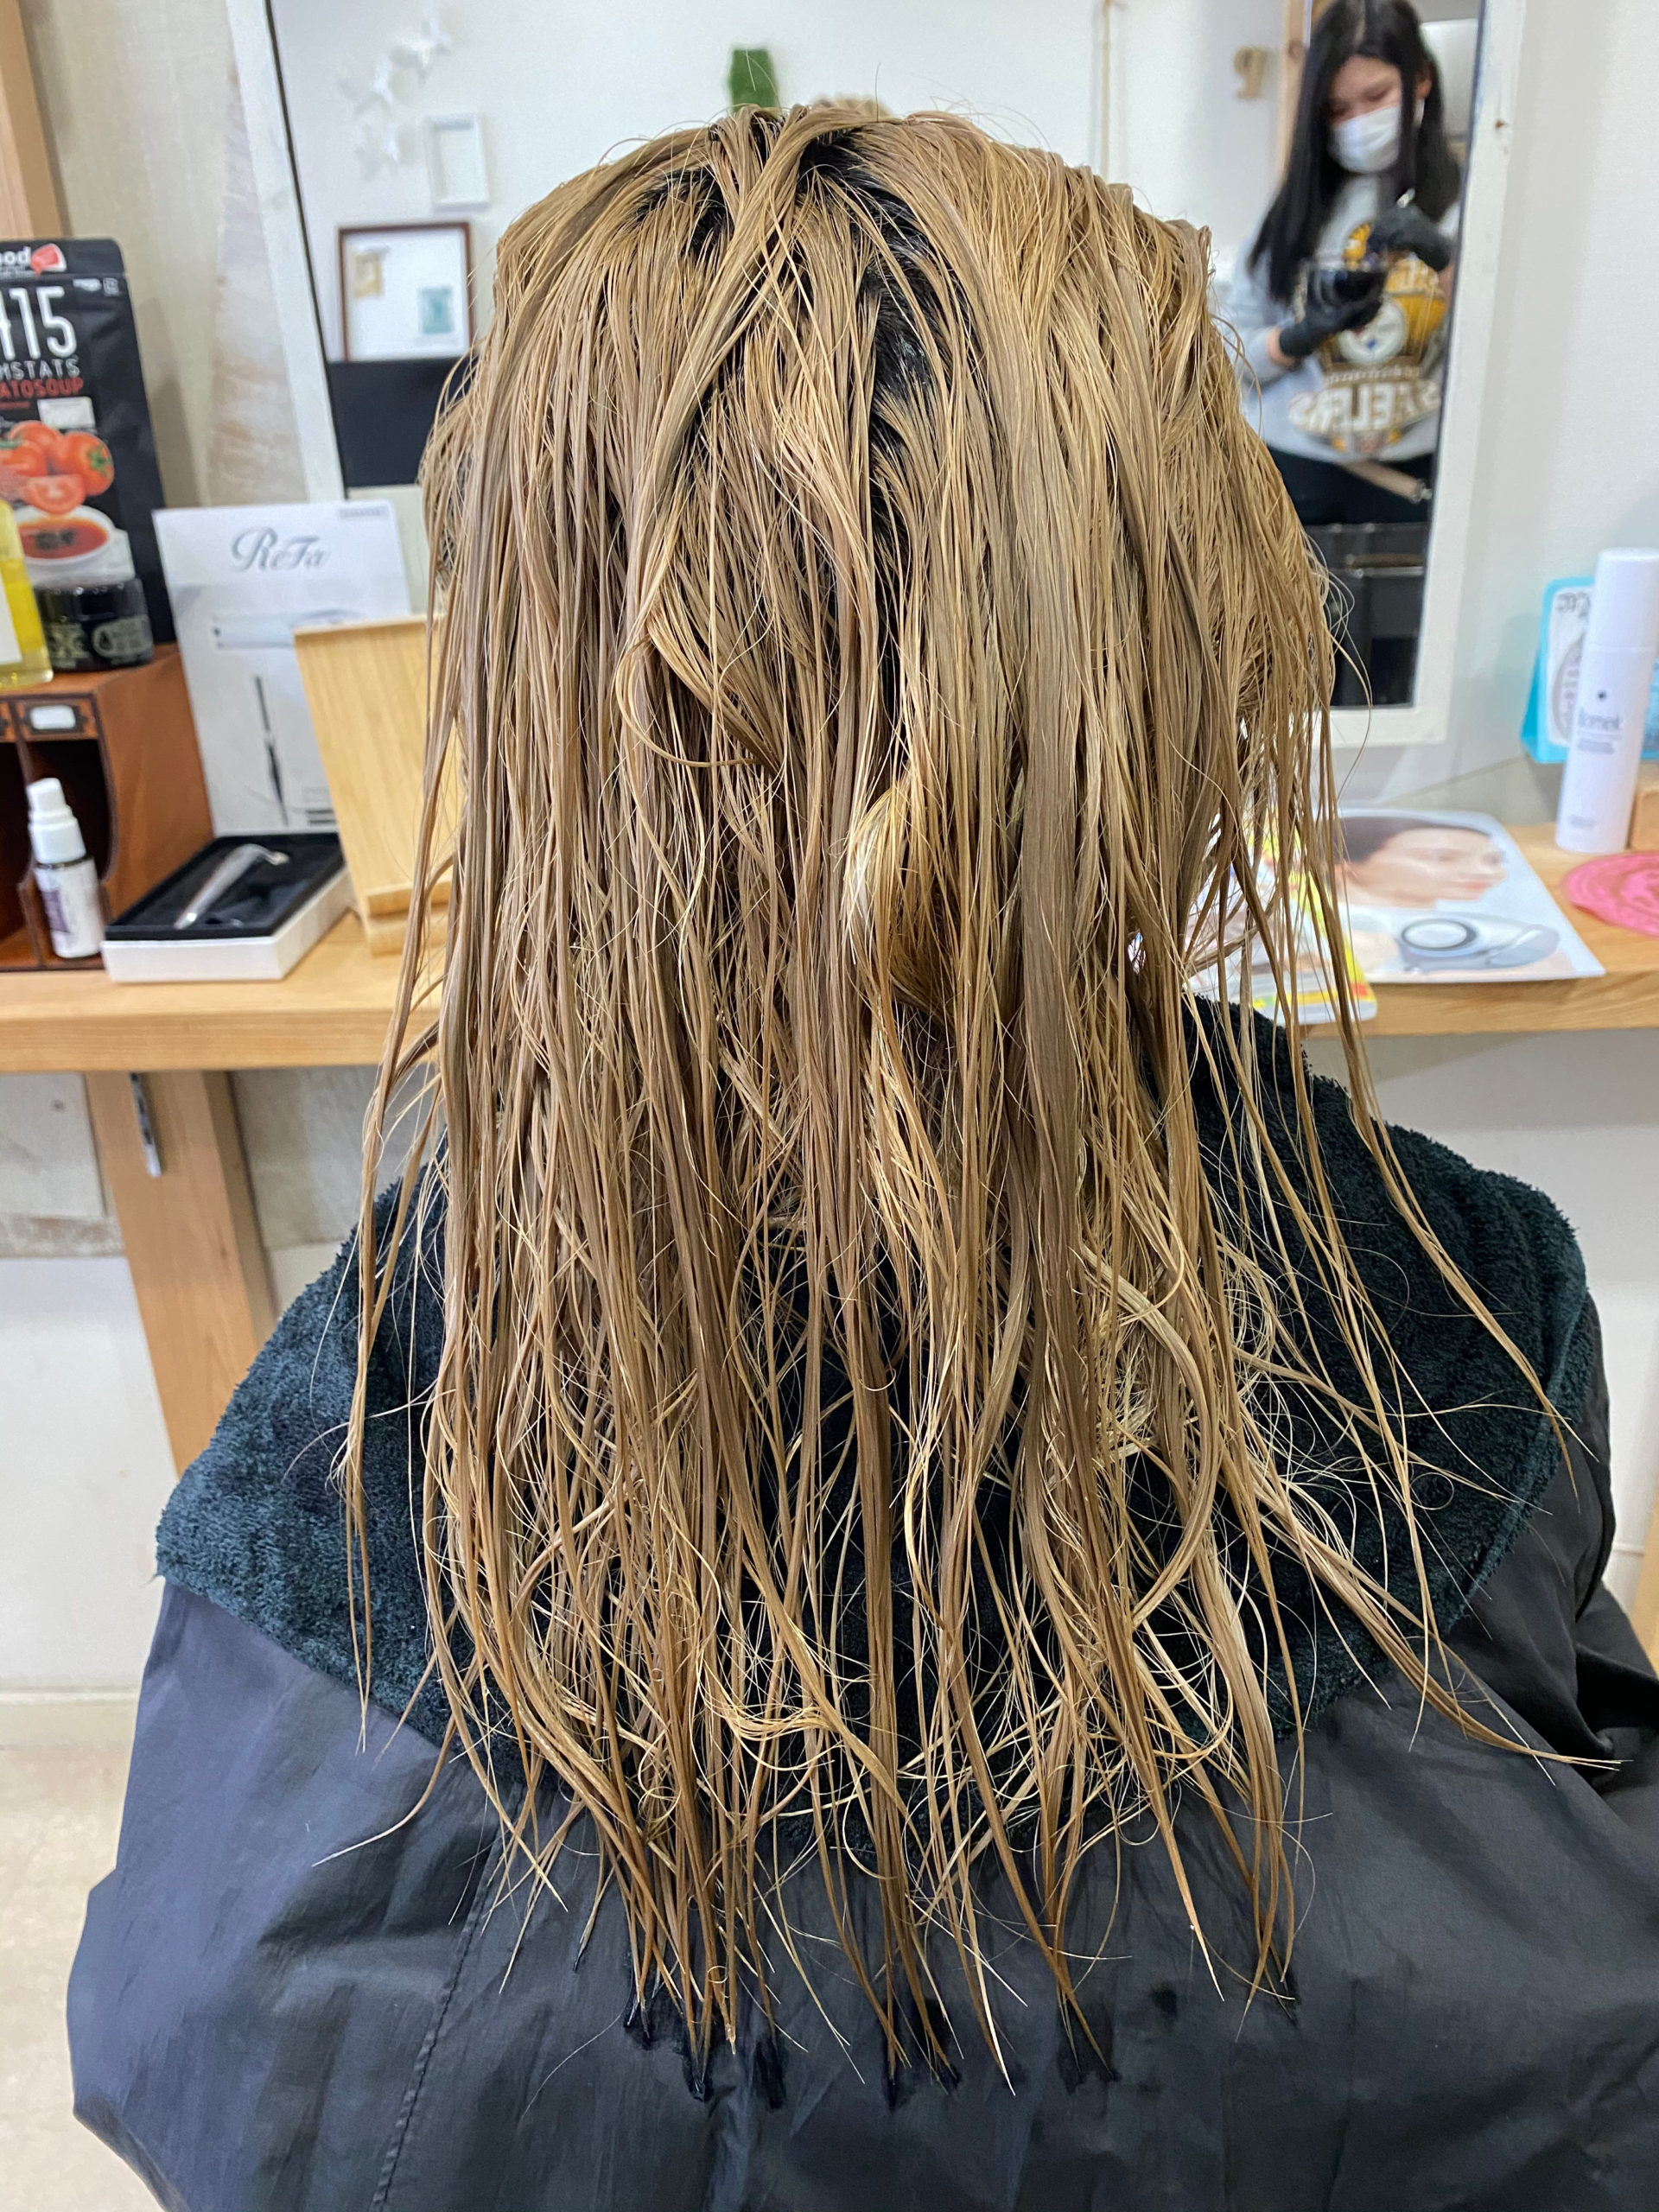 ブリーチ毛の縮毛矯正をジュエリーシステムシリーズで艶髪。原宿・表参道『髪のお悩みを解決するヘアケア美容師の挑戦』